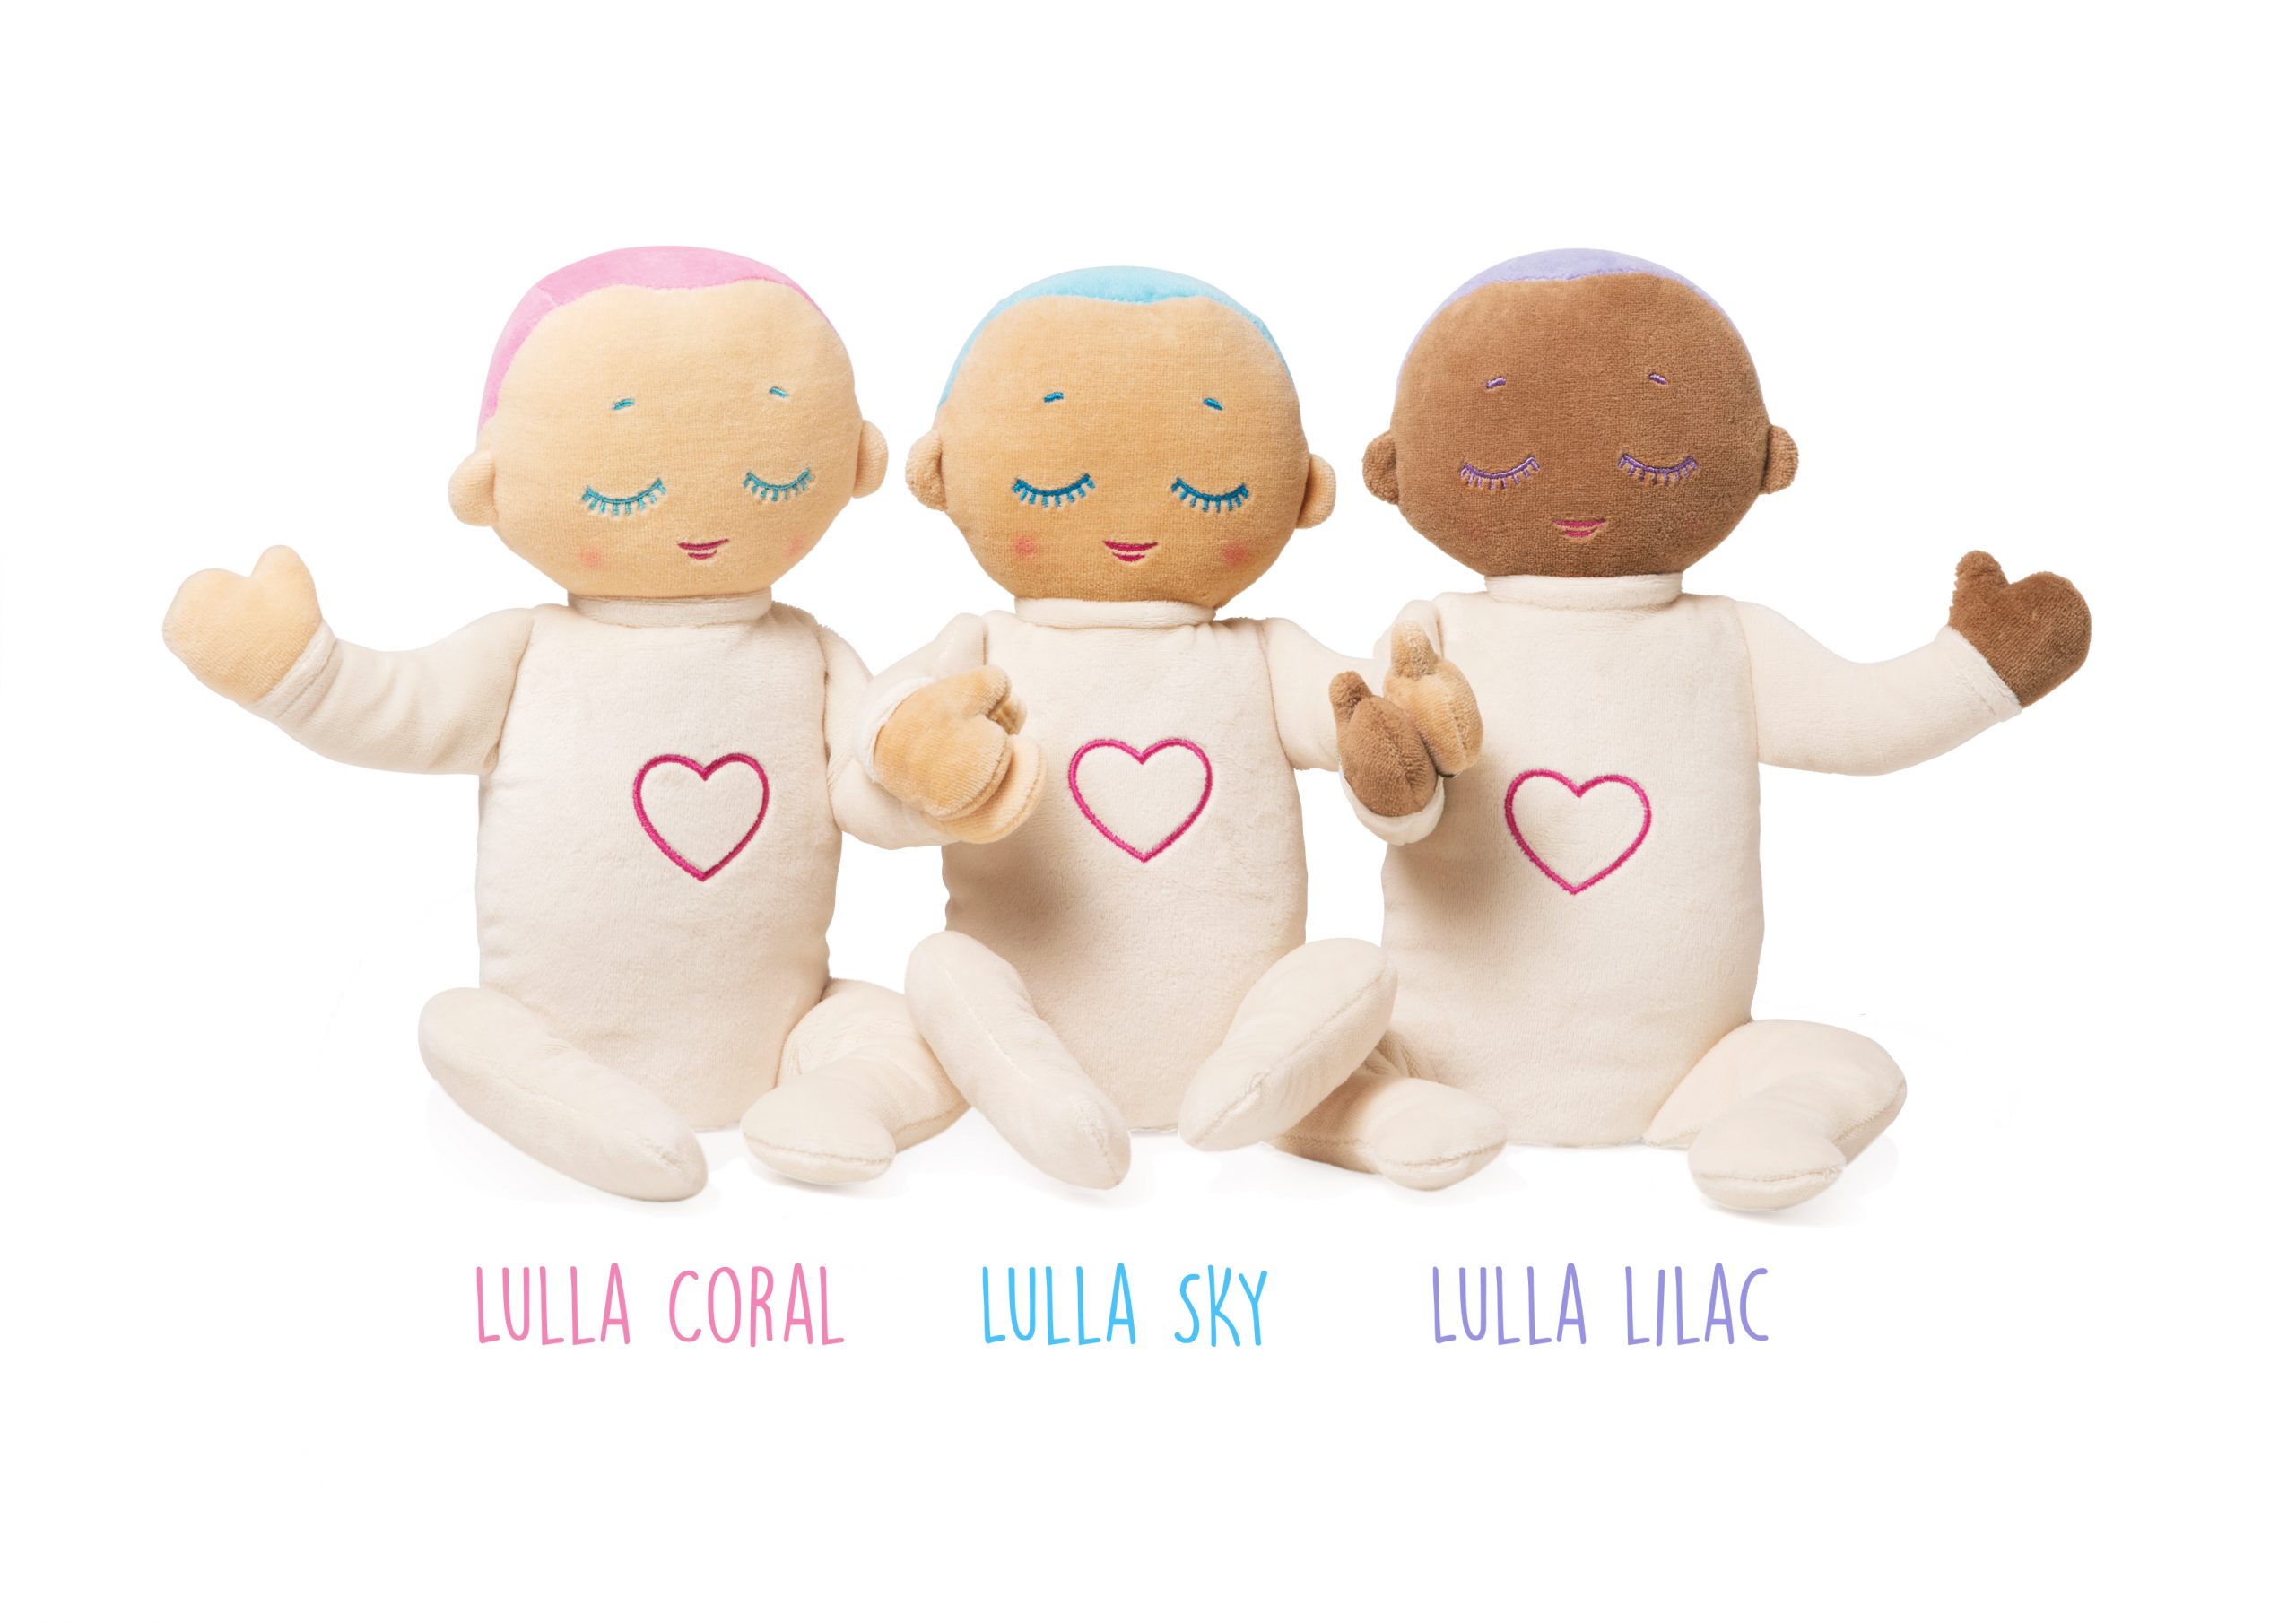 Three Lulla dolls sitting in a row